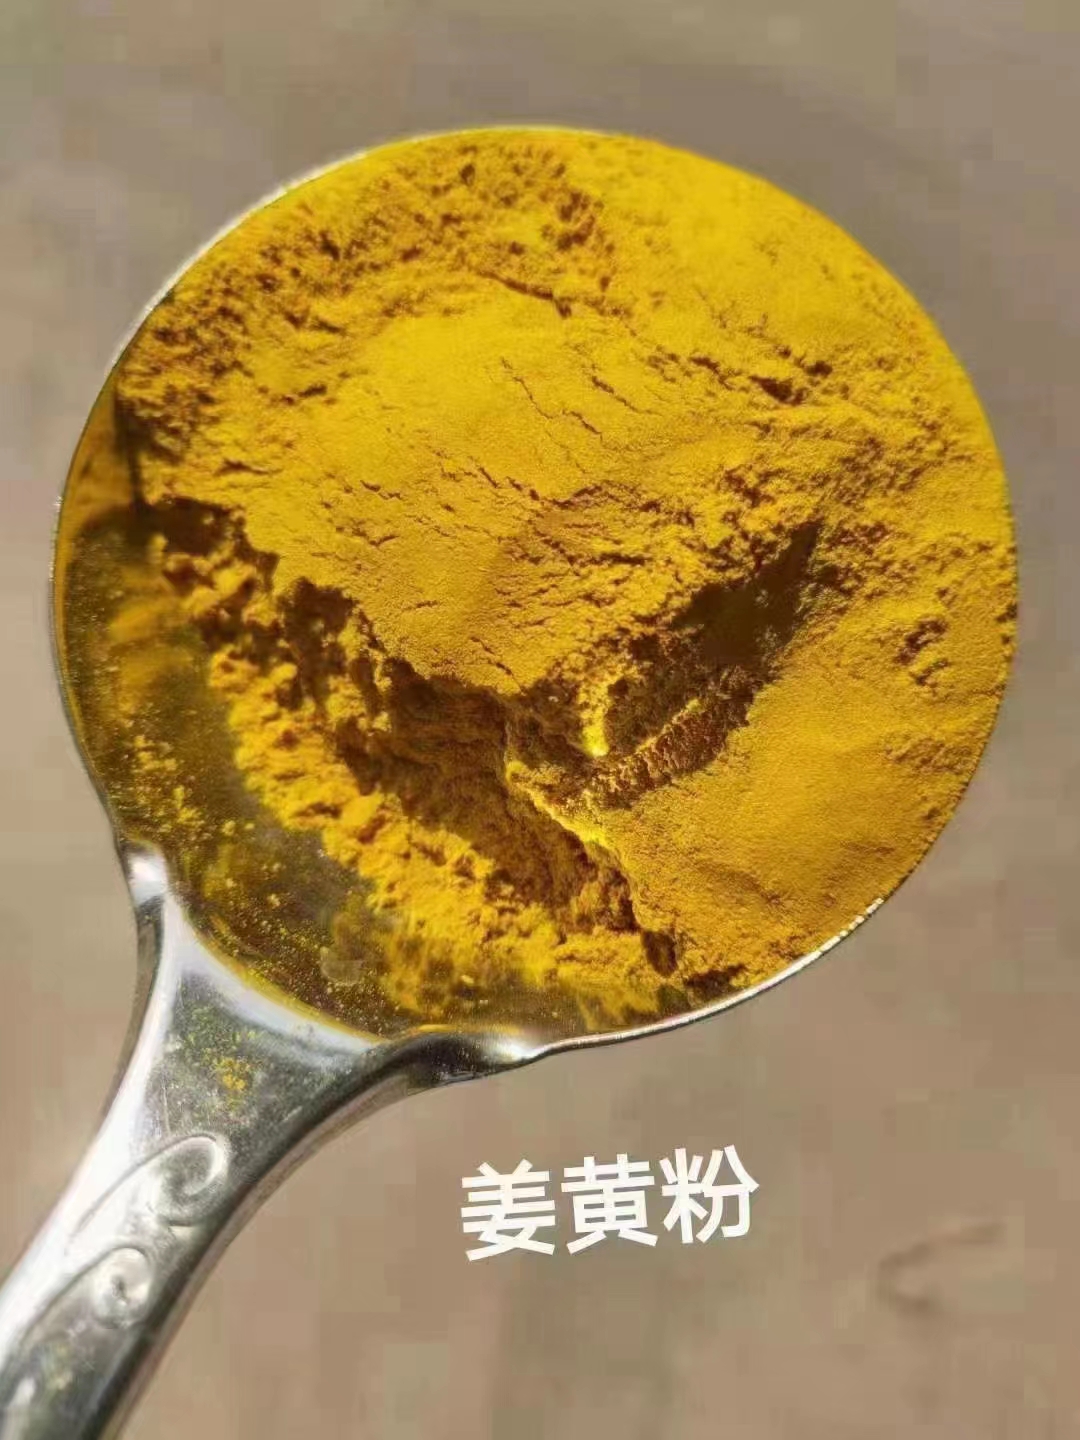 青禾萃取原料姜黄粉适用于牛羊饲养